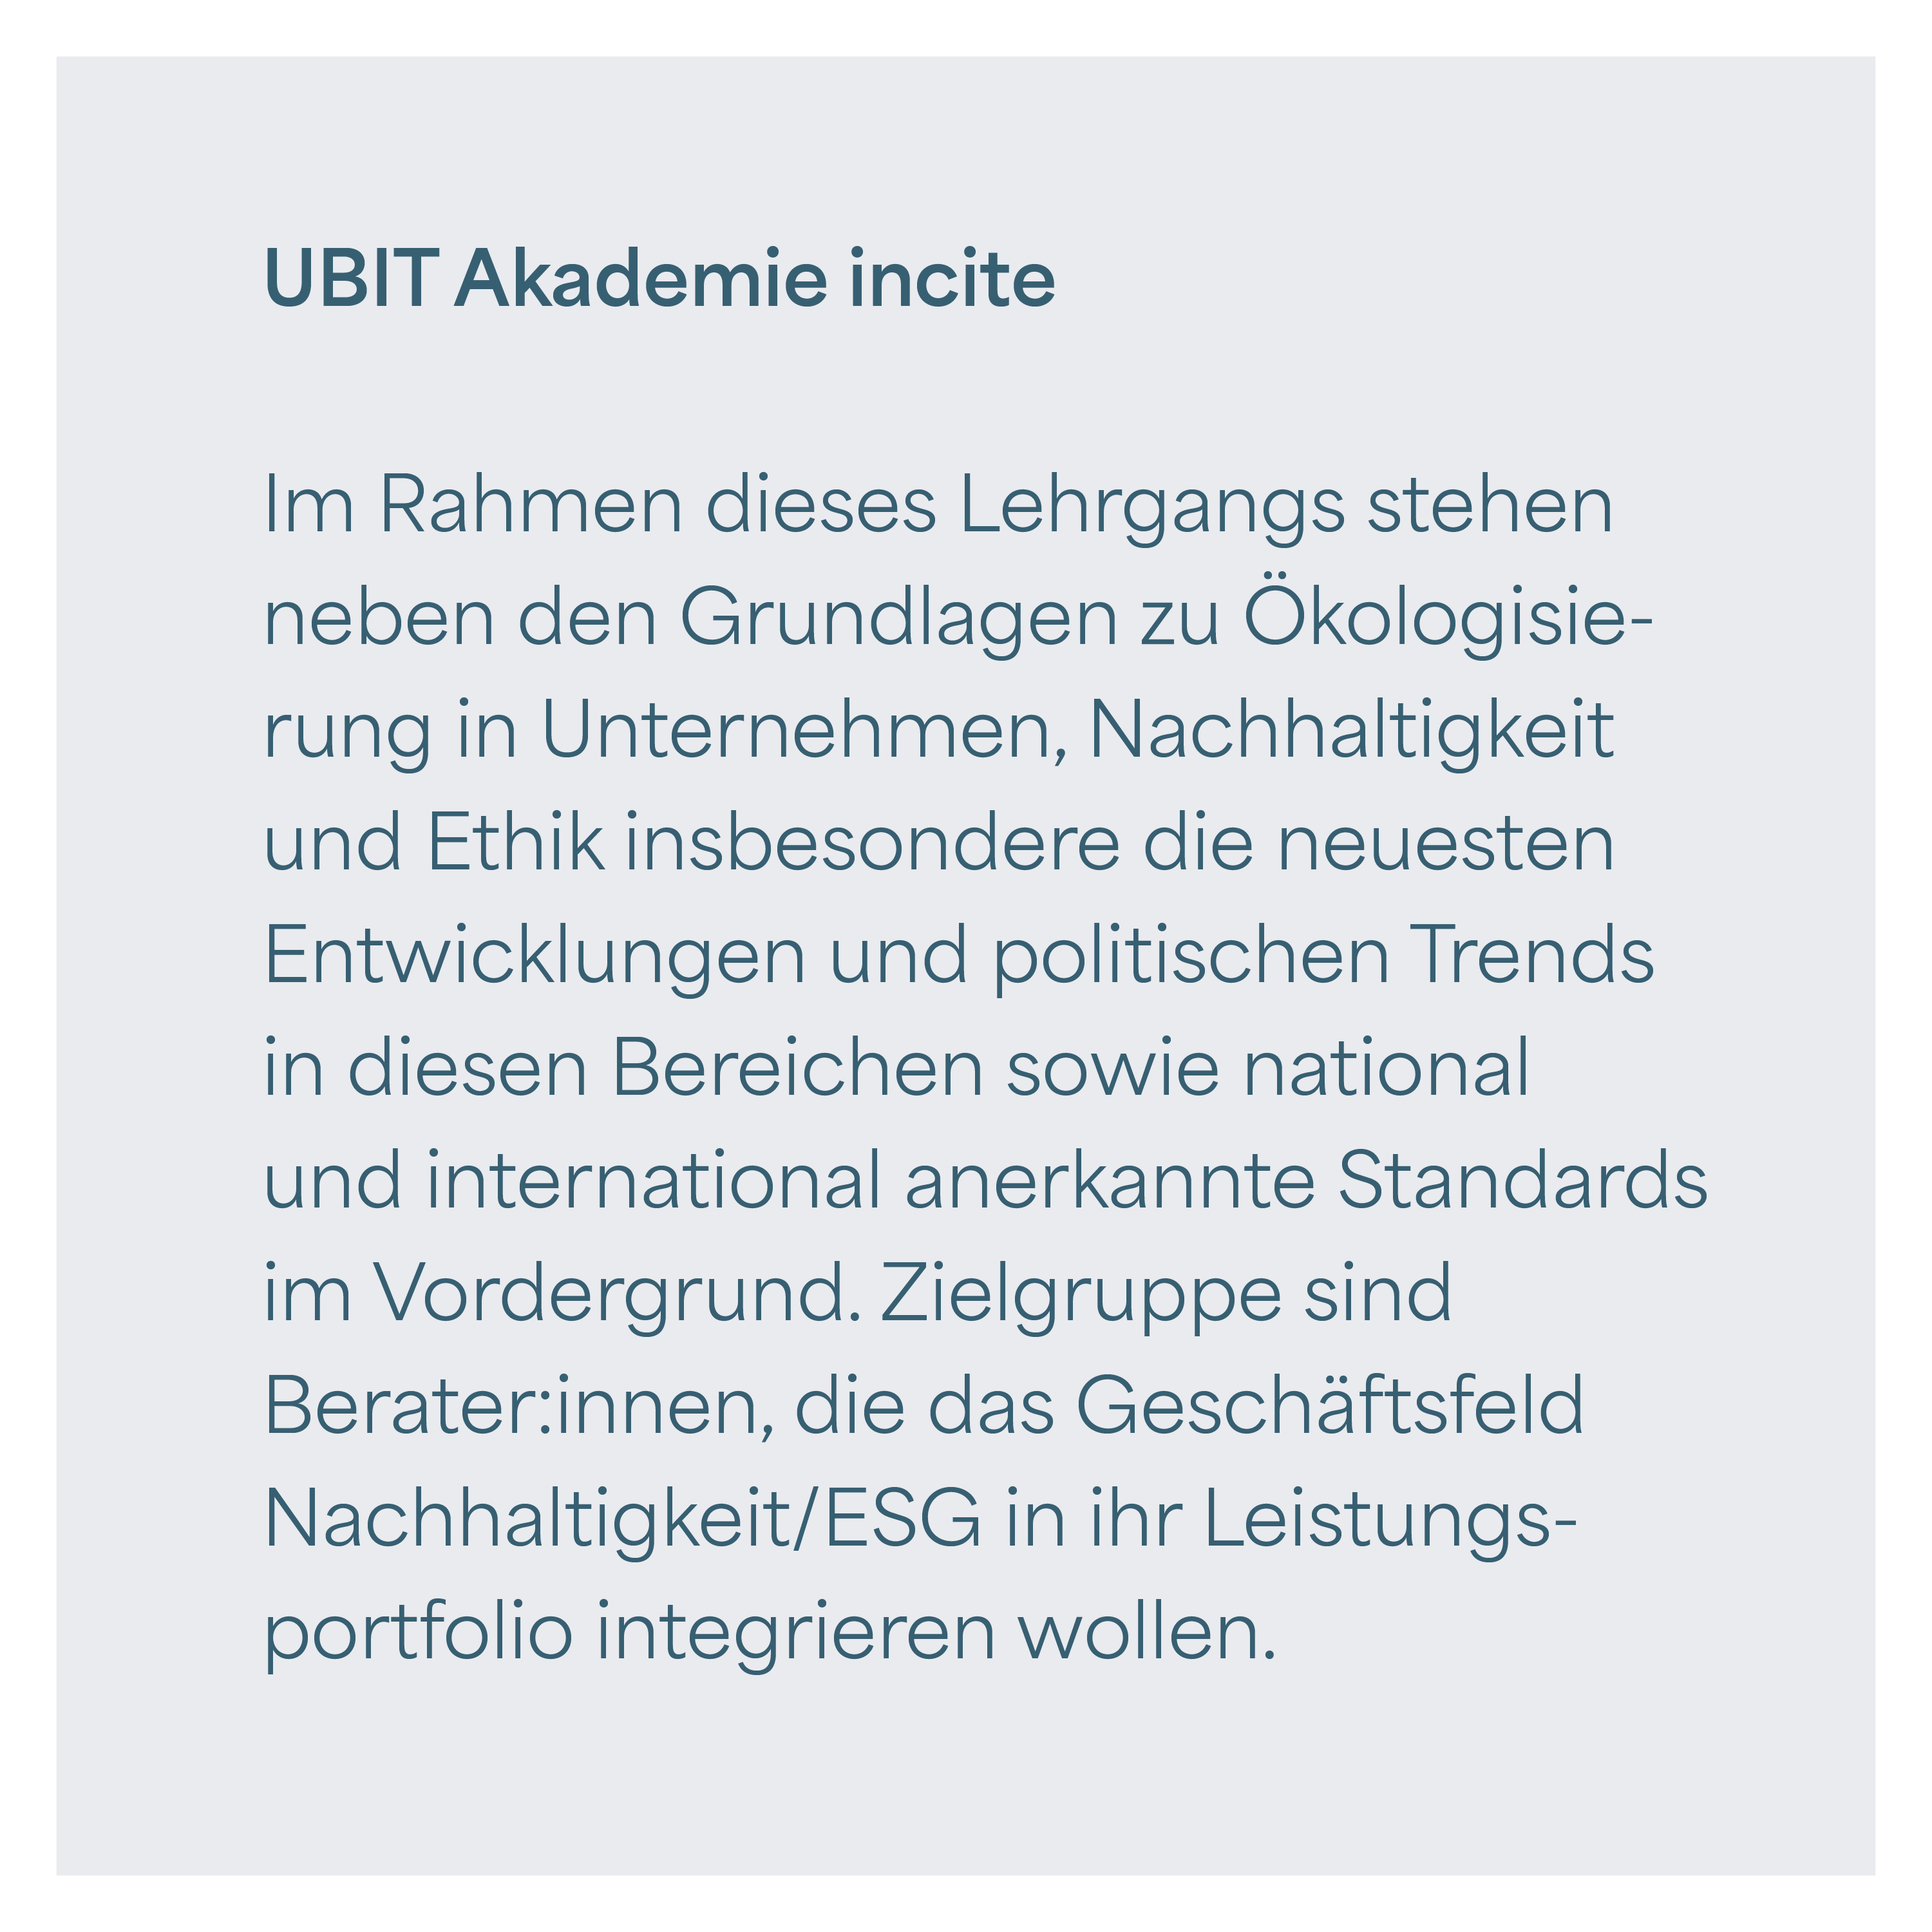 UBIT Akademie incite